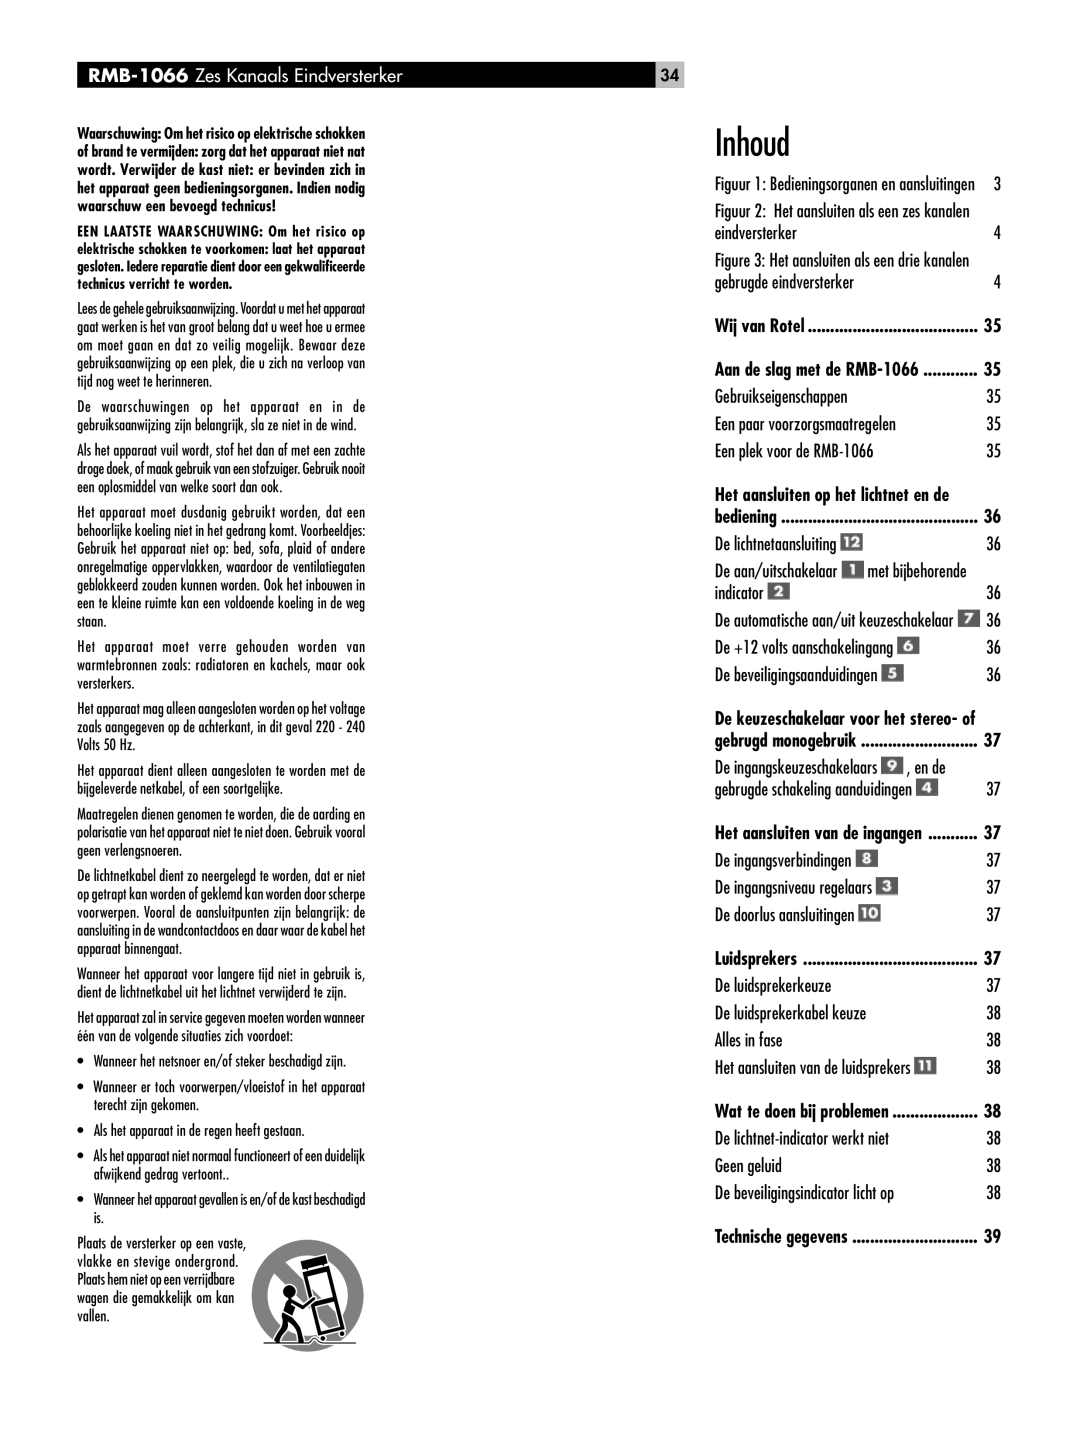 Rotel owner manual Inhoud, RMB-1066 Zes Kanaals Eindversterker 